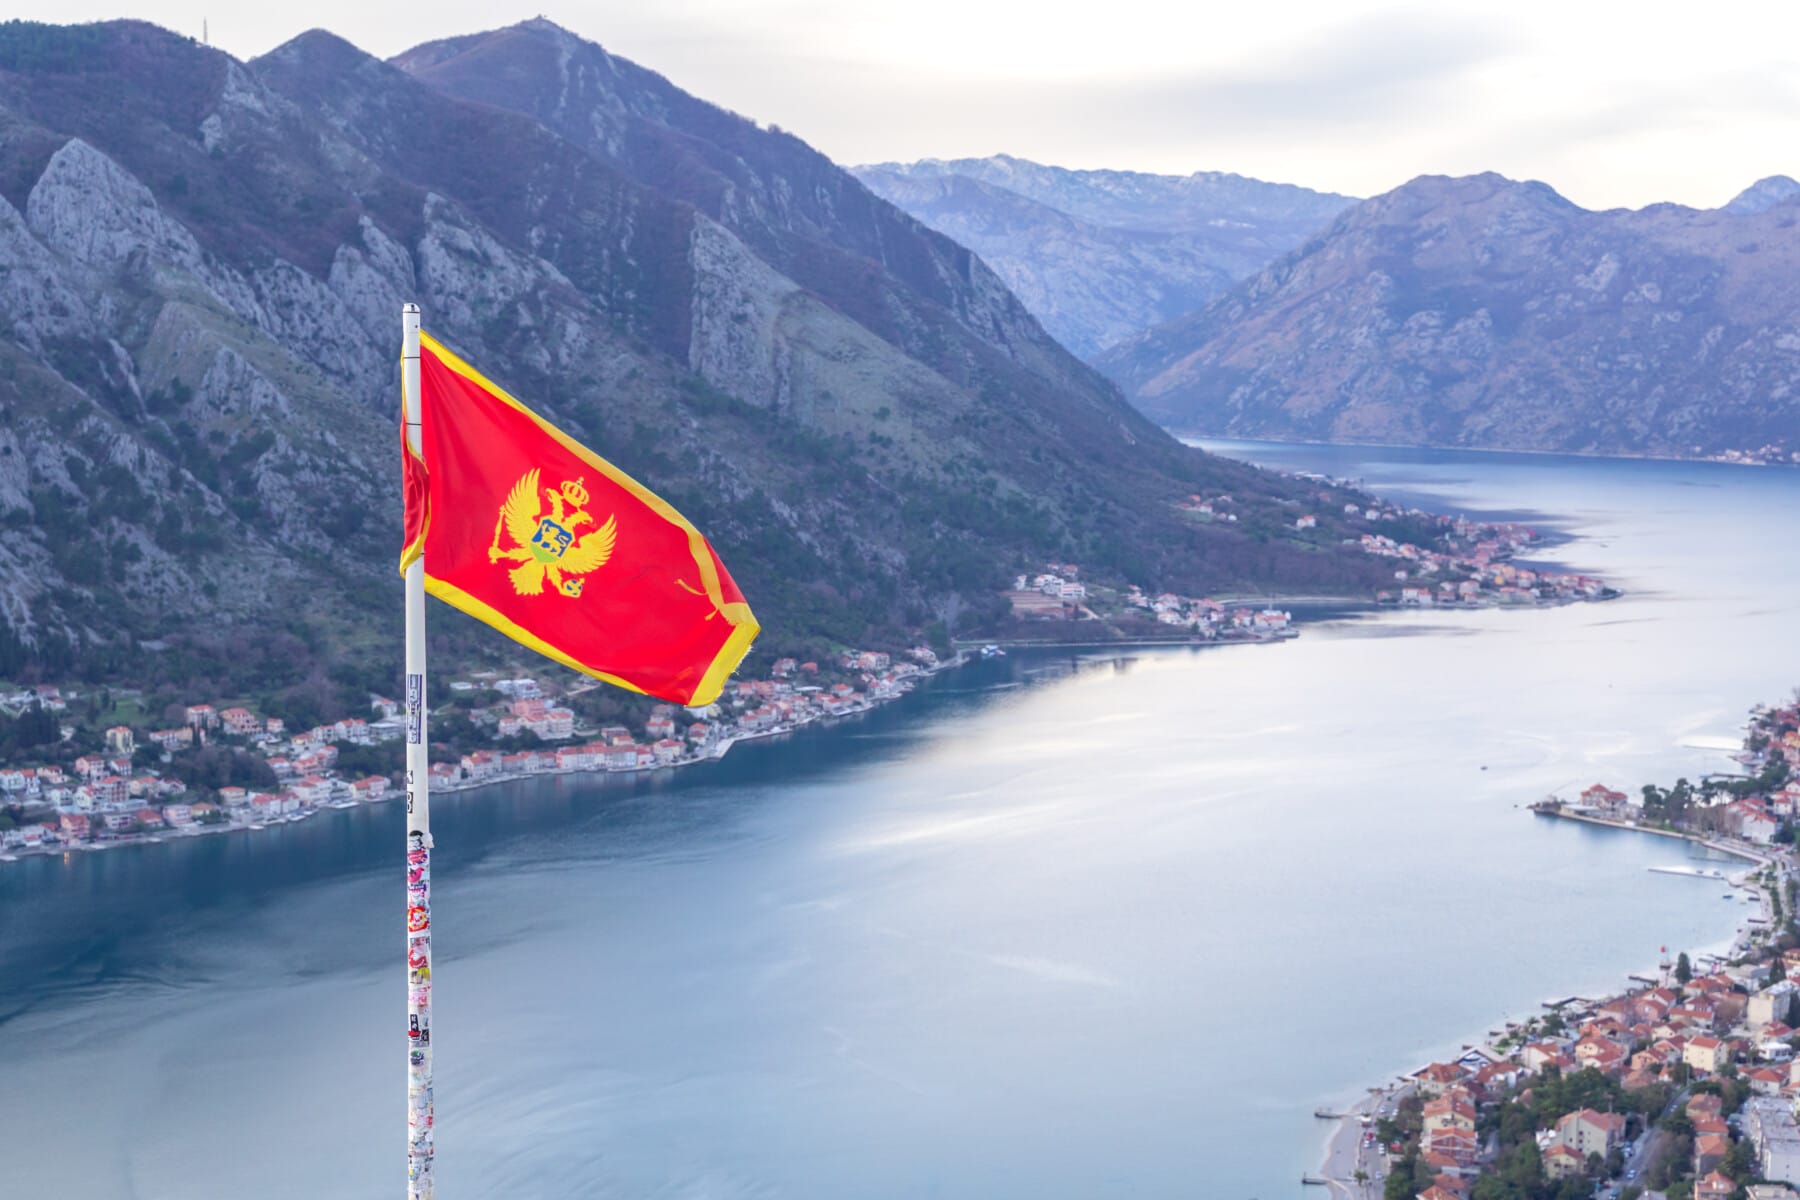 Montenegro flag at Kotor bay view